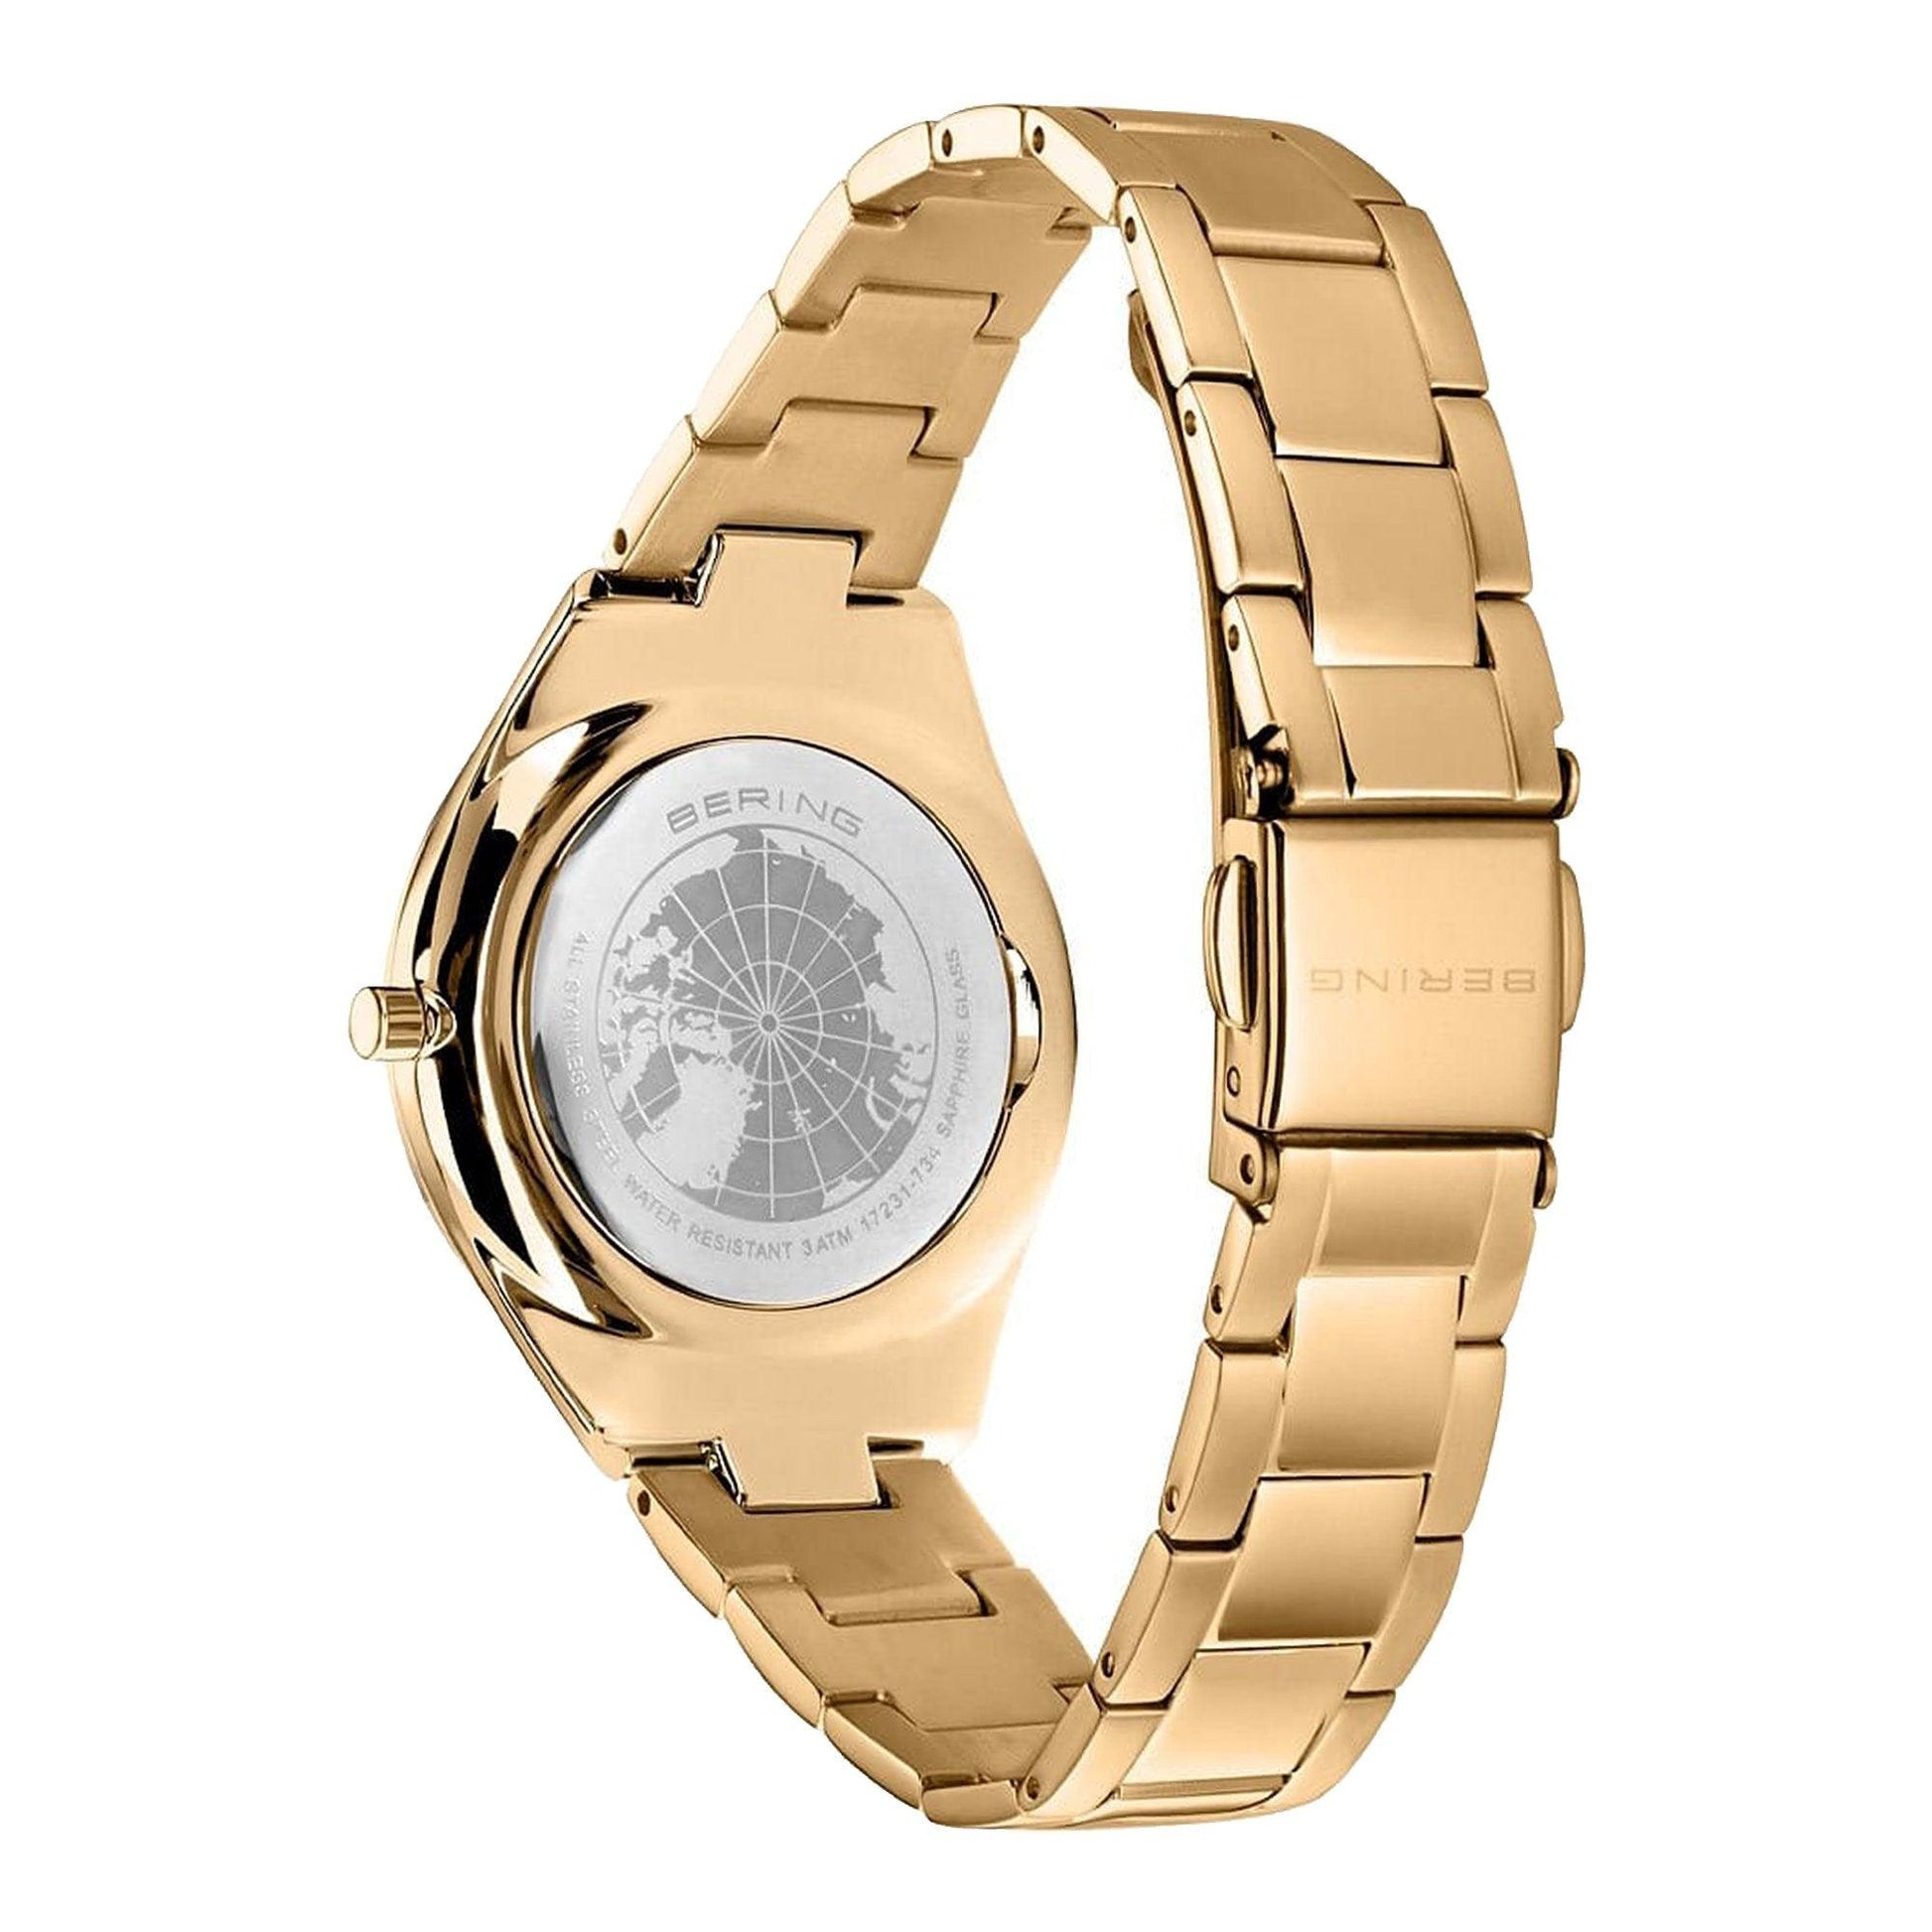 Bering Ultra Slim 17231-734 orologio donna al quarzo - Kechiq Concept Boutique